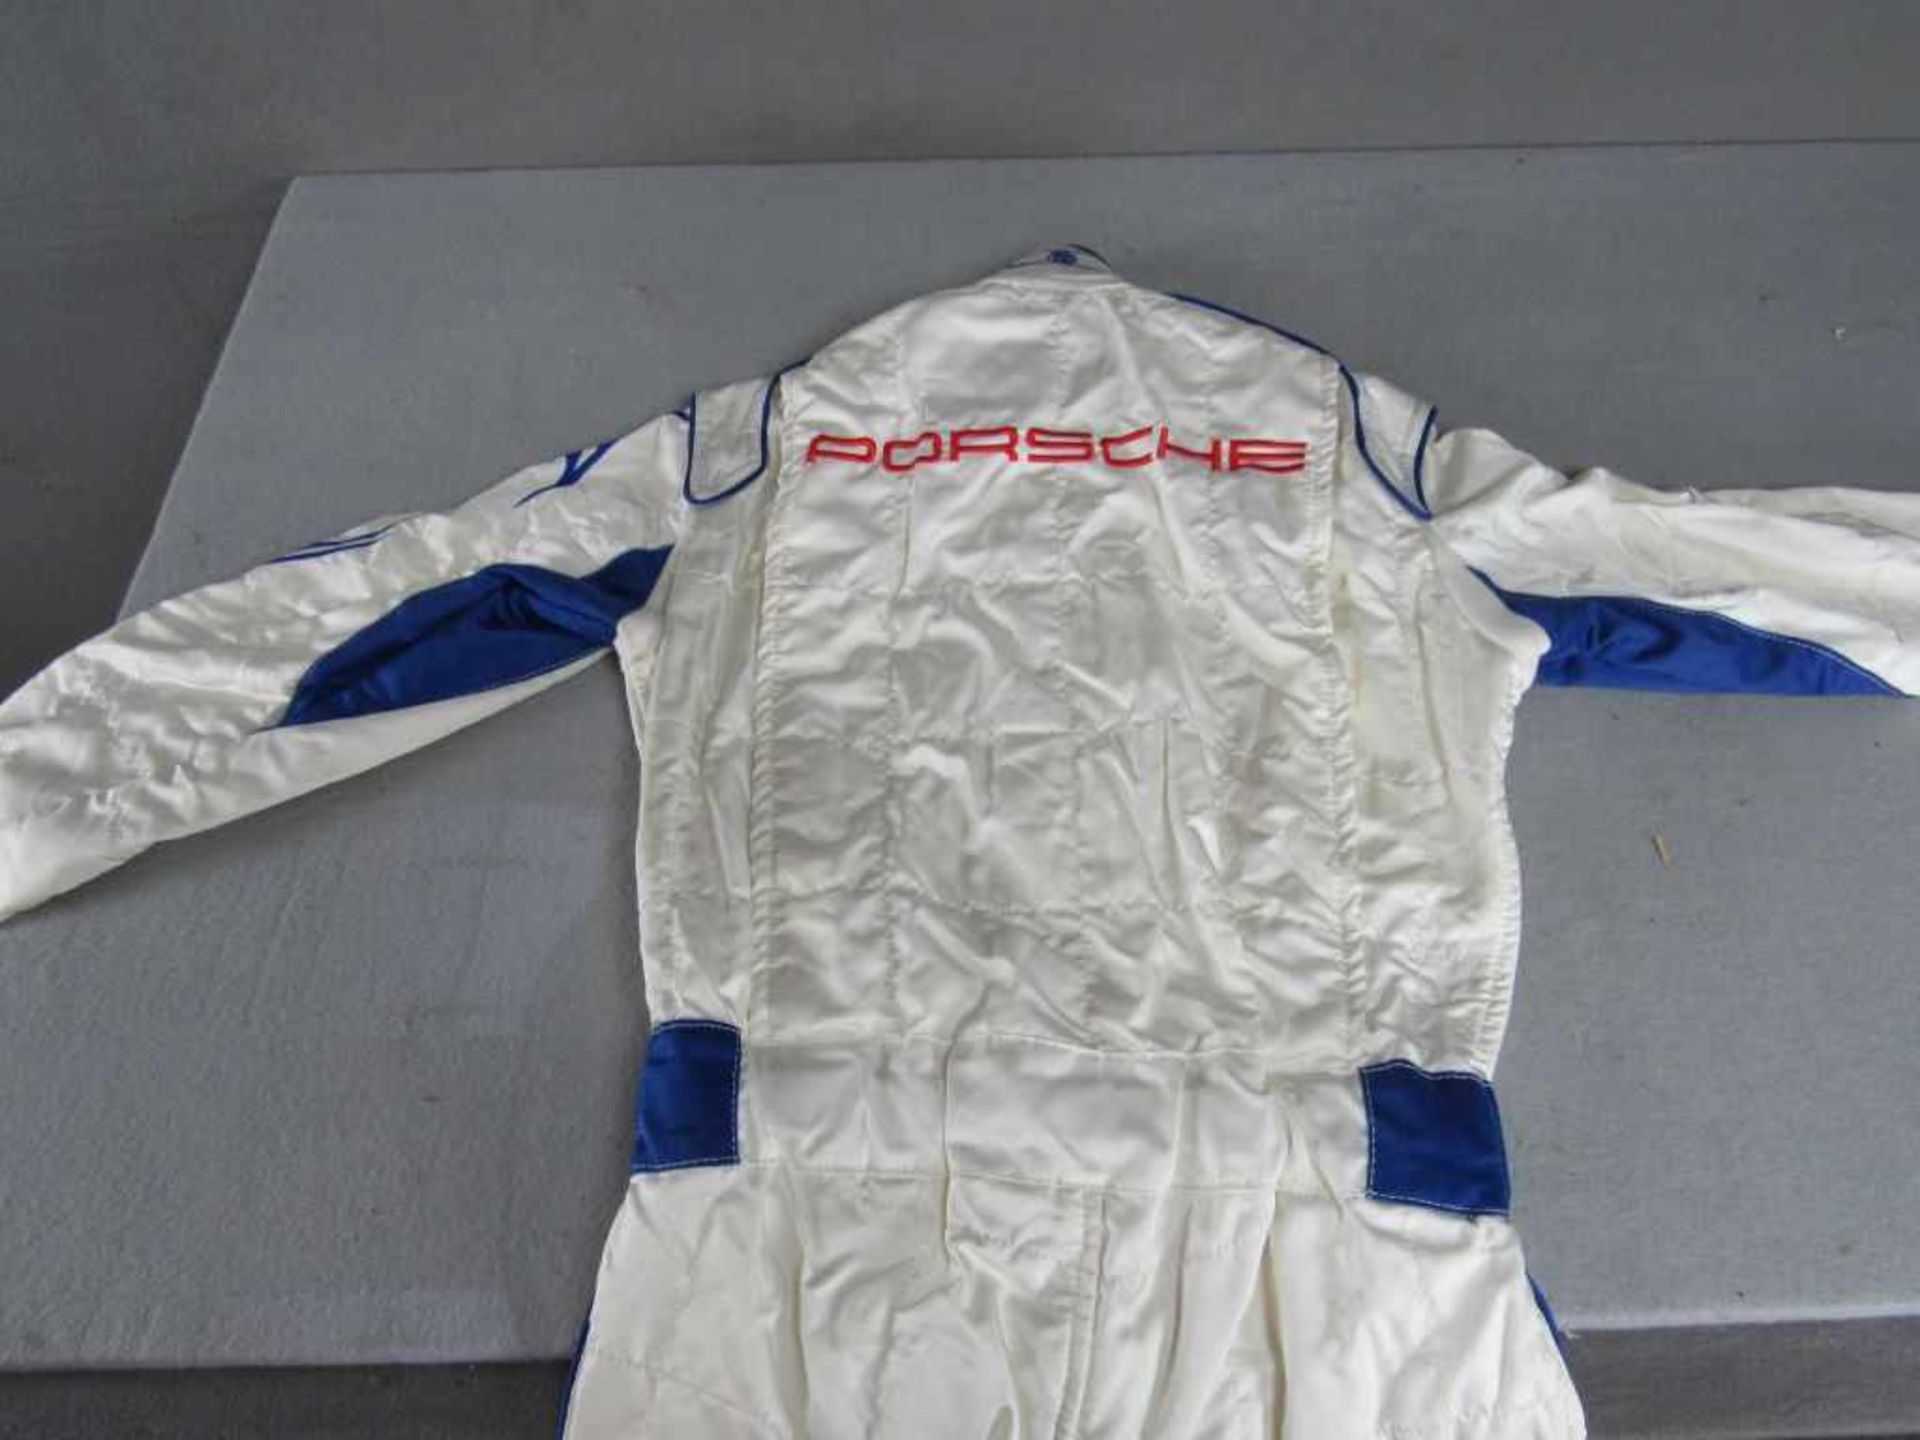 Rennkombi Porsche Autorennen 100% originales Stück 1x getragen sehr guter Zustand - Image 5 of 6